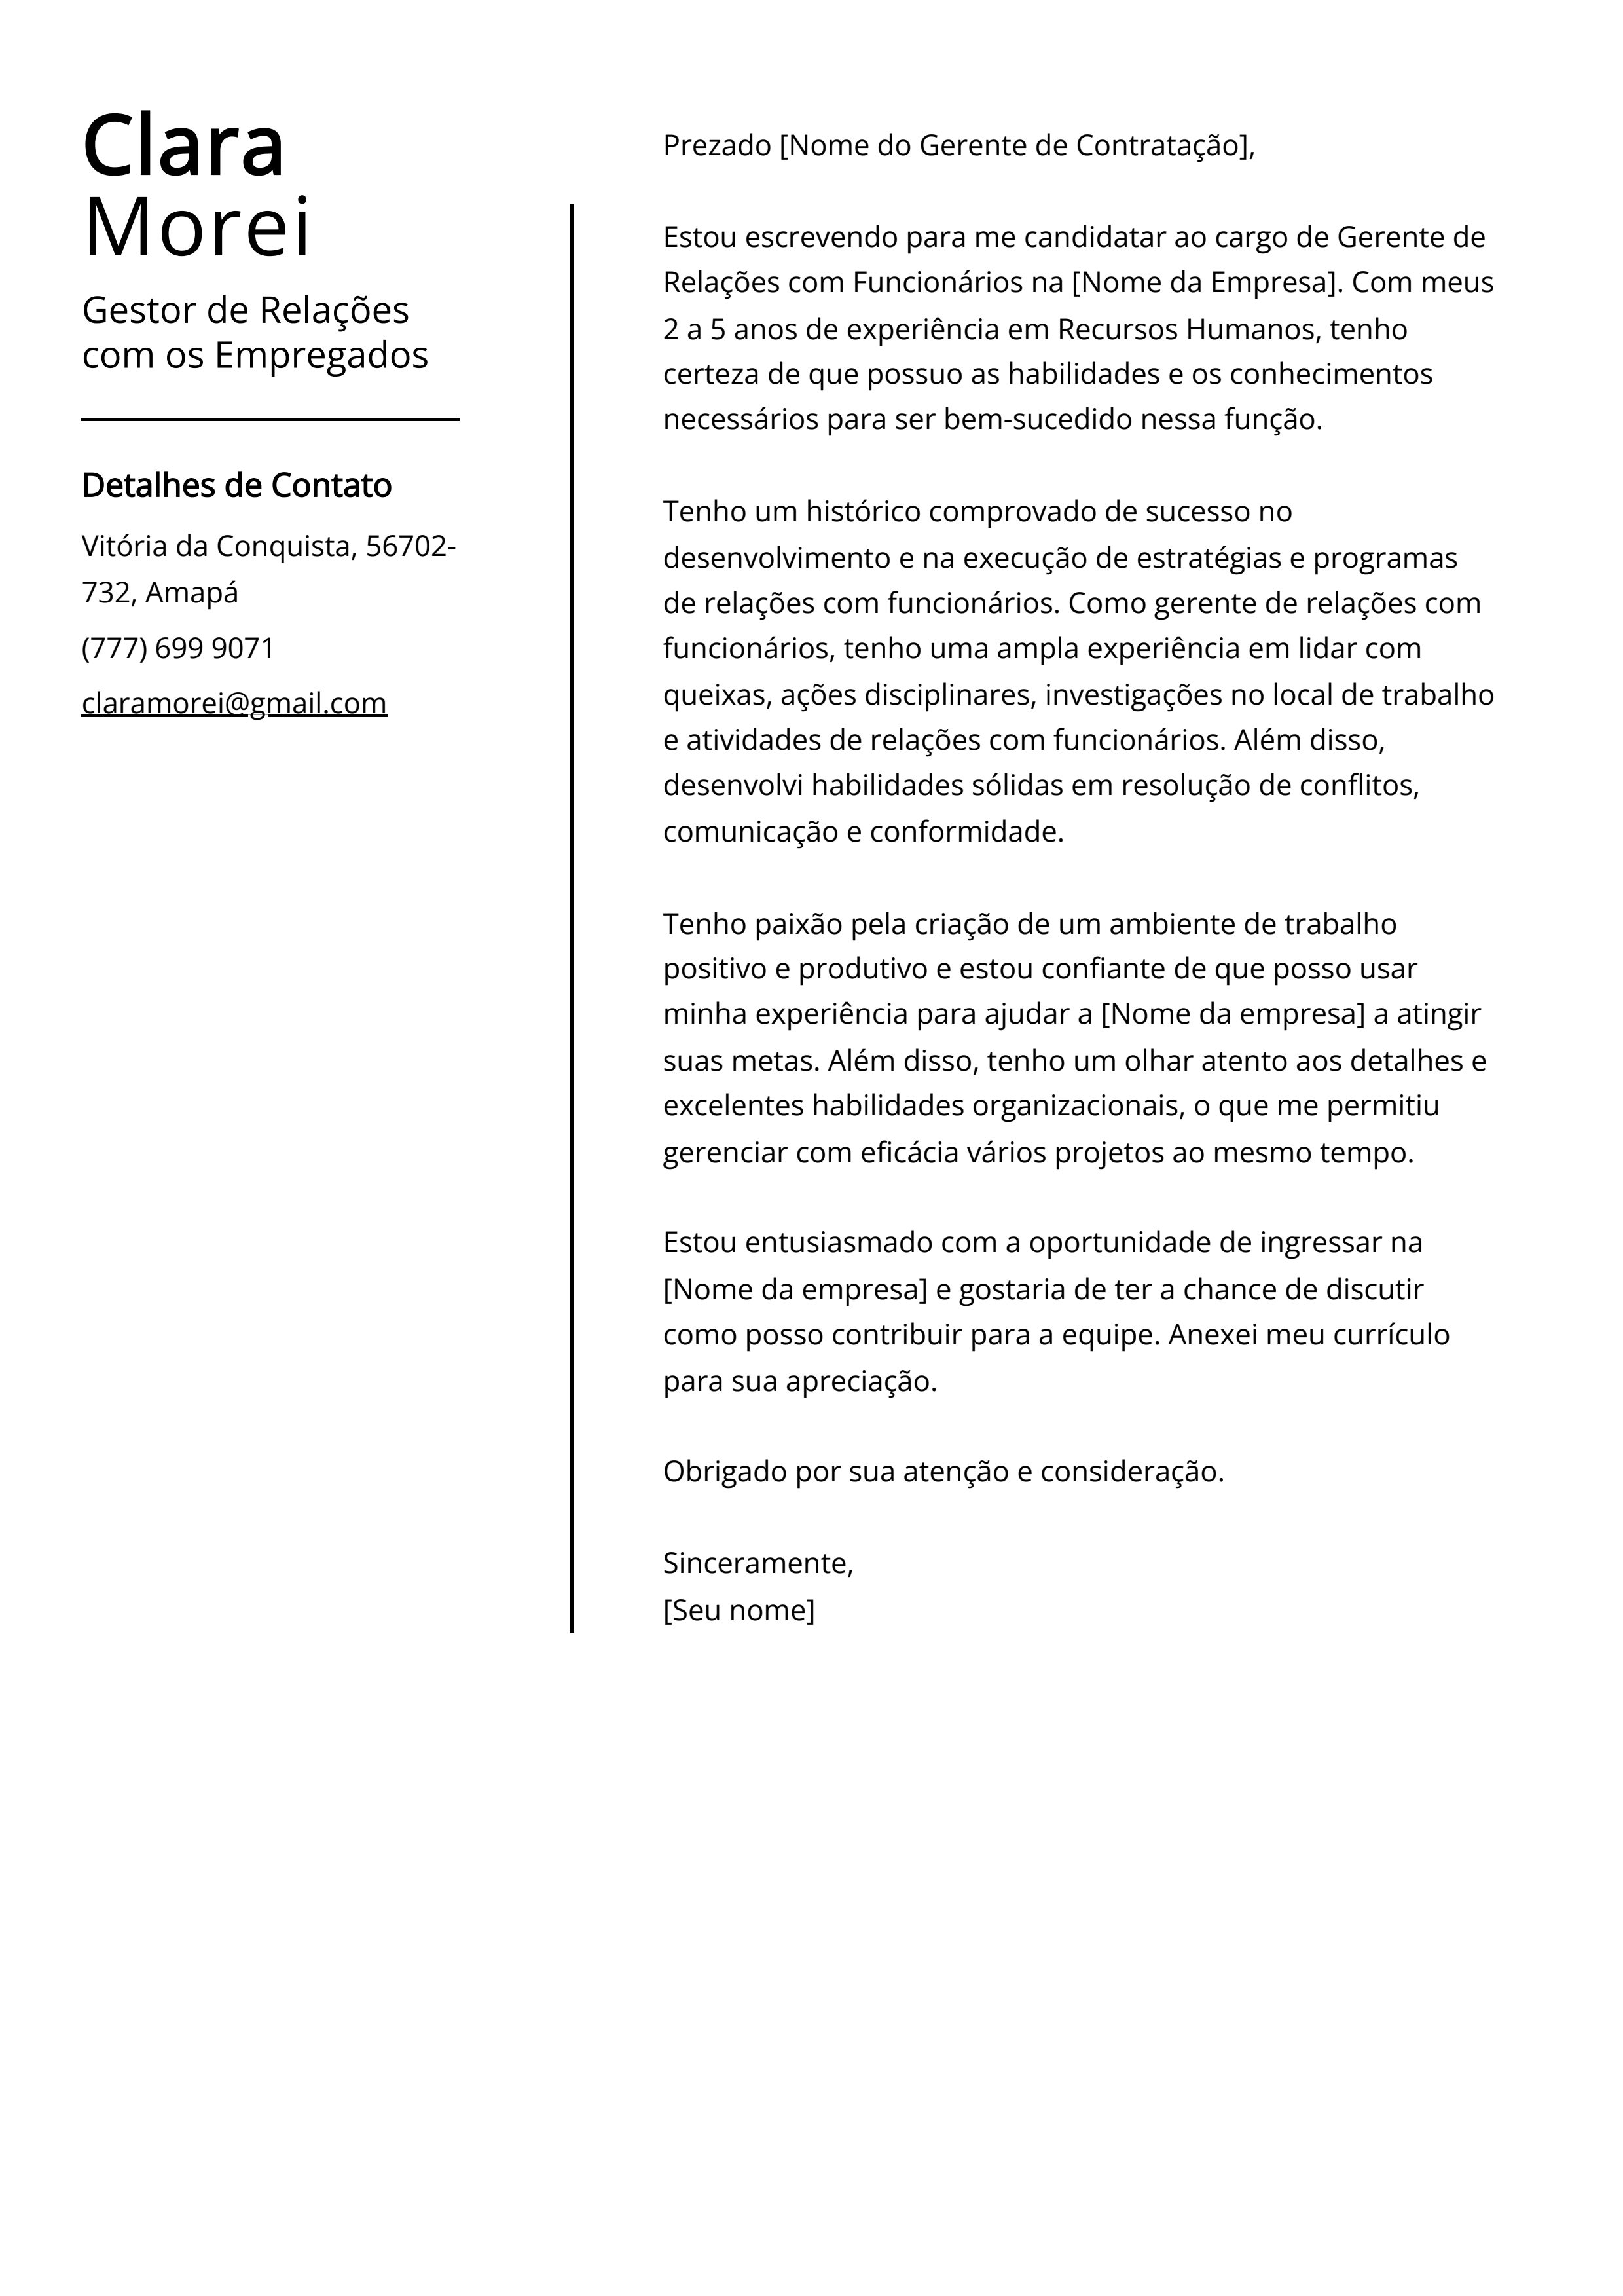 Exemplo de carta de apresentação do Gestor de Relações com os Empregados